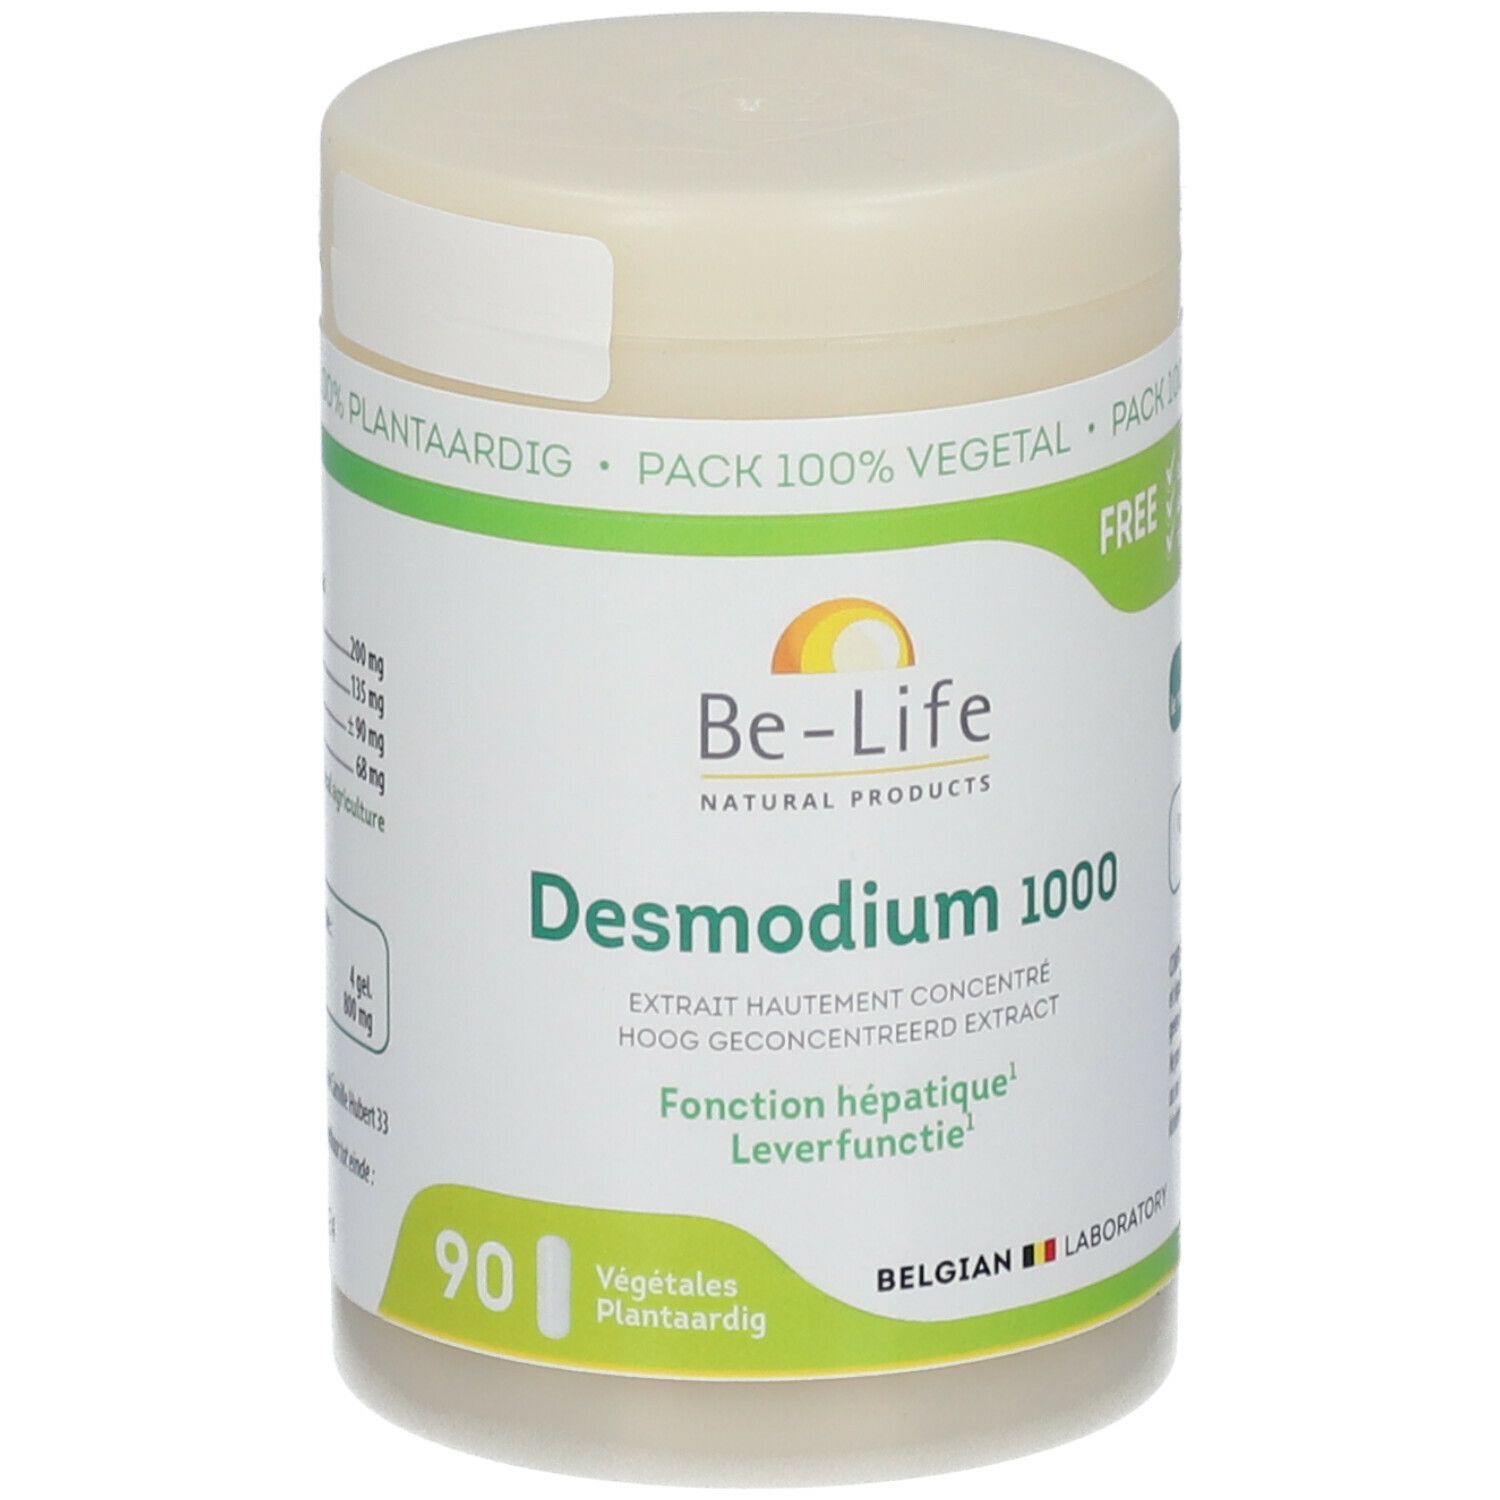 Be-Life Desmodium 1000